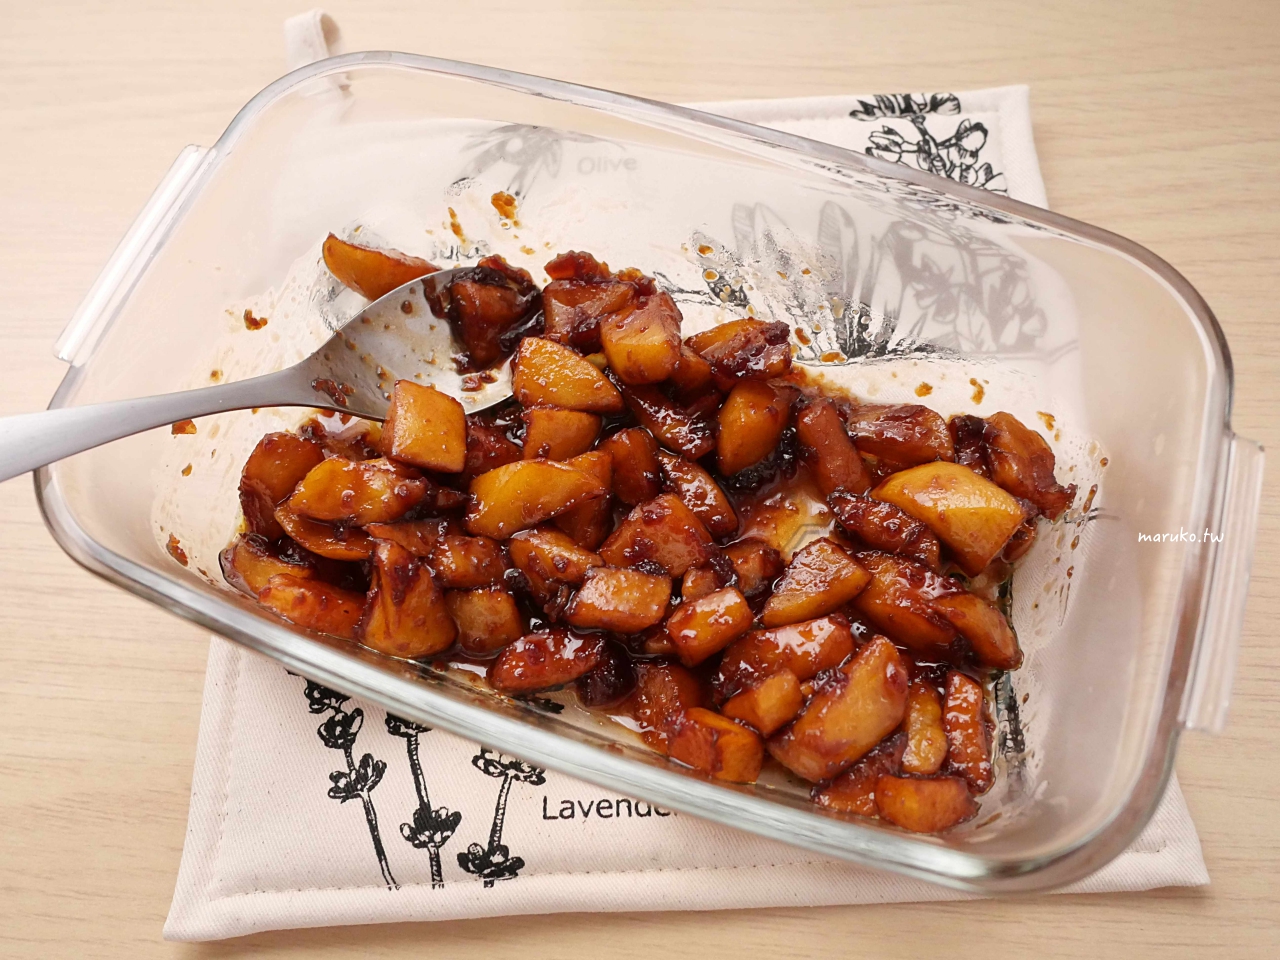 【食譜】日式蘋果派 三個步驟簡易製作日式蘋果派 烤箱食譜 @Maruko與美食有個約會